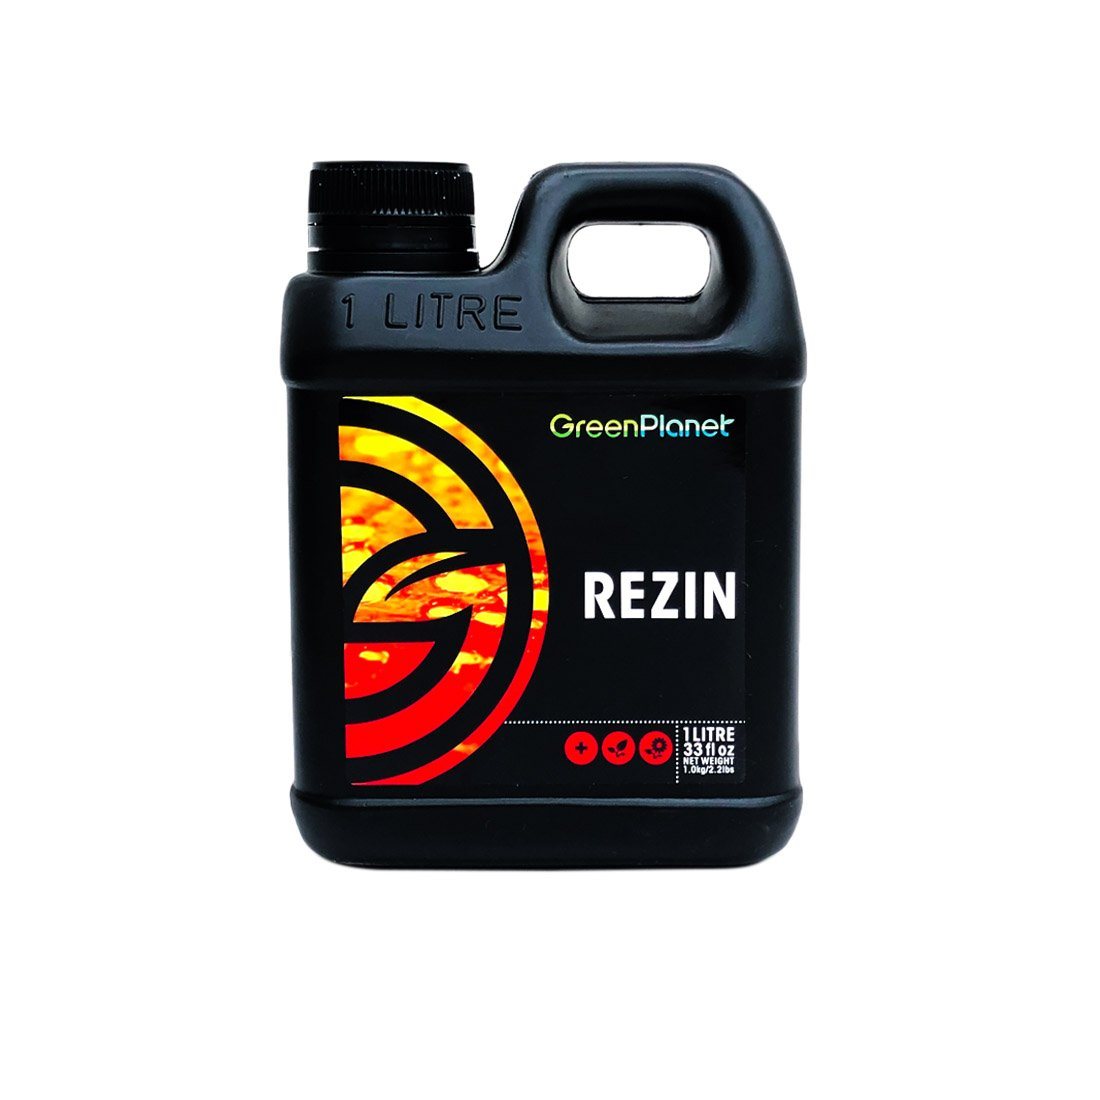 Rezin by Green Planet 1 litre